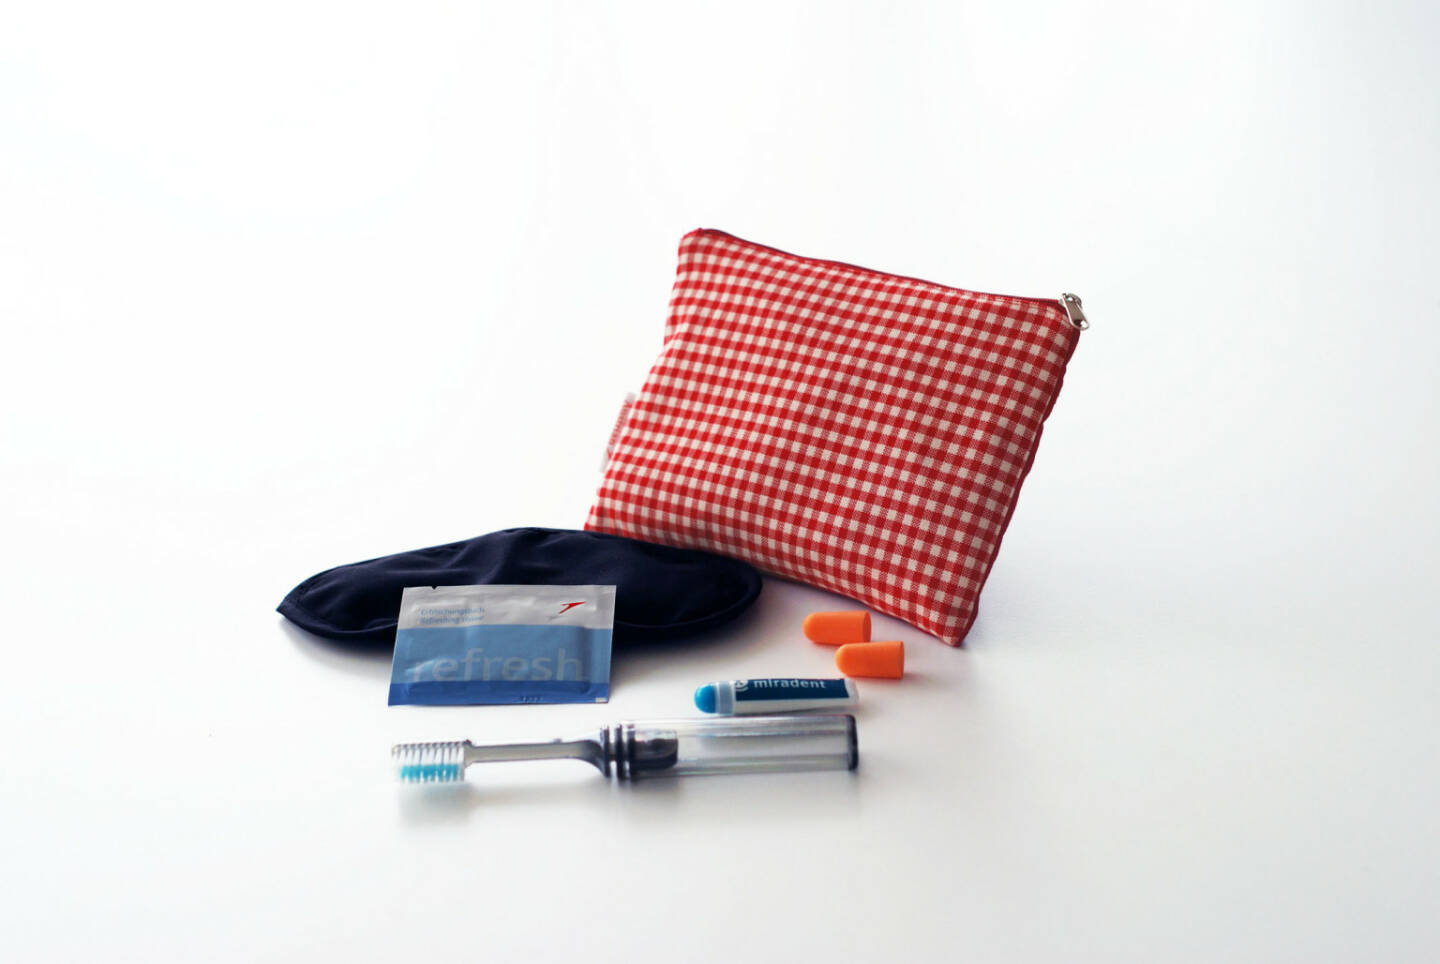 Das neue Austrian Tascherl ist ein praktisches Comfort Kit und enthält neben einer Zahnbürste und Zahnpasta auch eine Schlafmaske, Ohrenstöpsel sowie ein Erfrischungstuch.